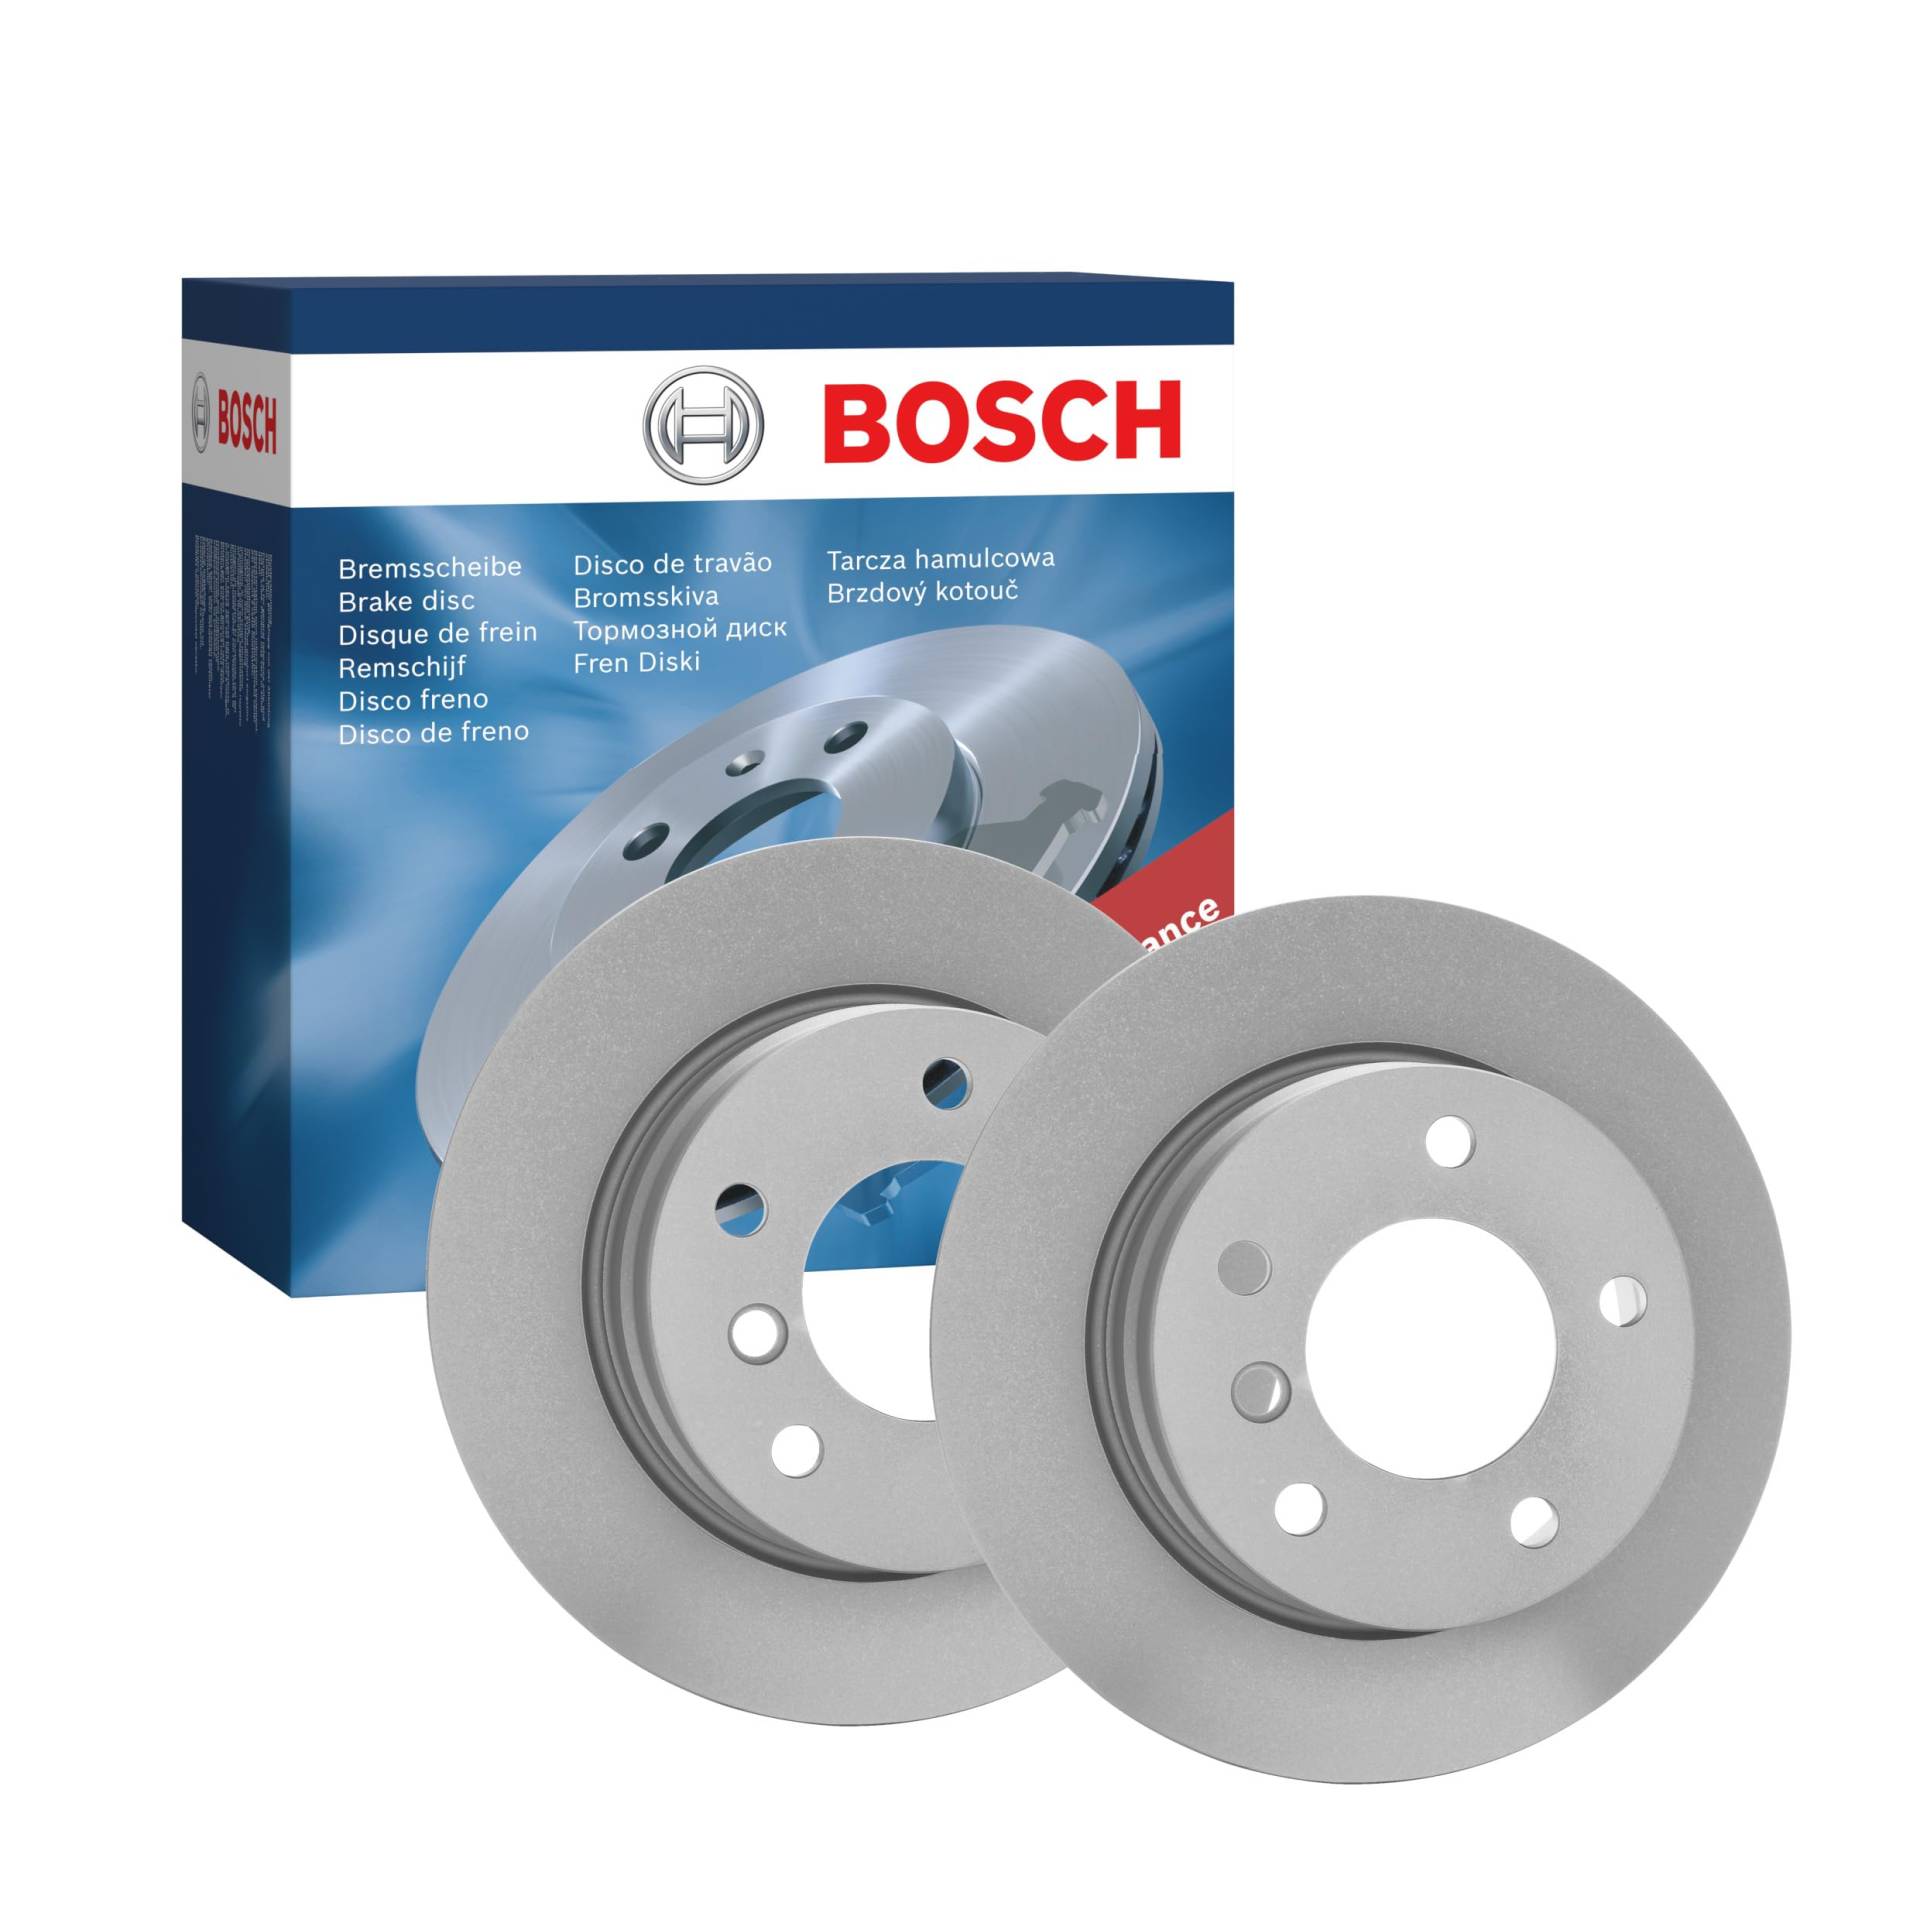 Bosch BD1085 Bremsscheiben - Hinterachse - ECE-R90 Zertifizierung - zwei Bremsscheiben pro Set von Bosch Automotive